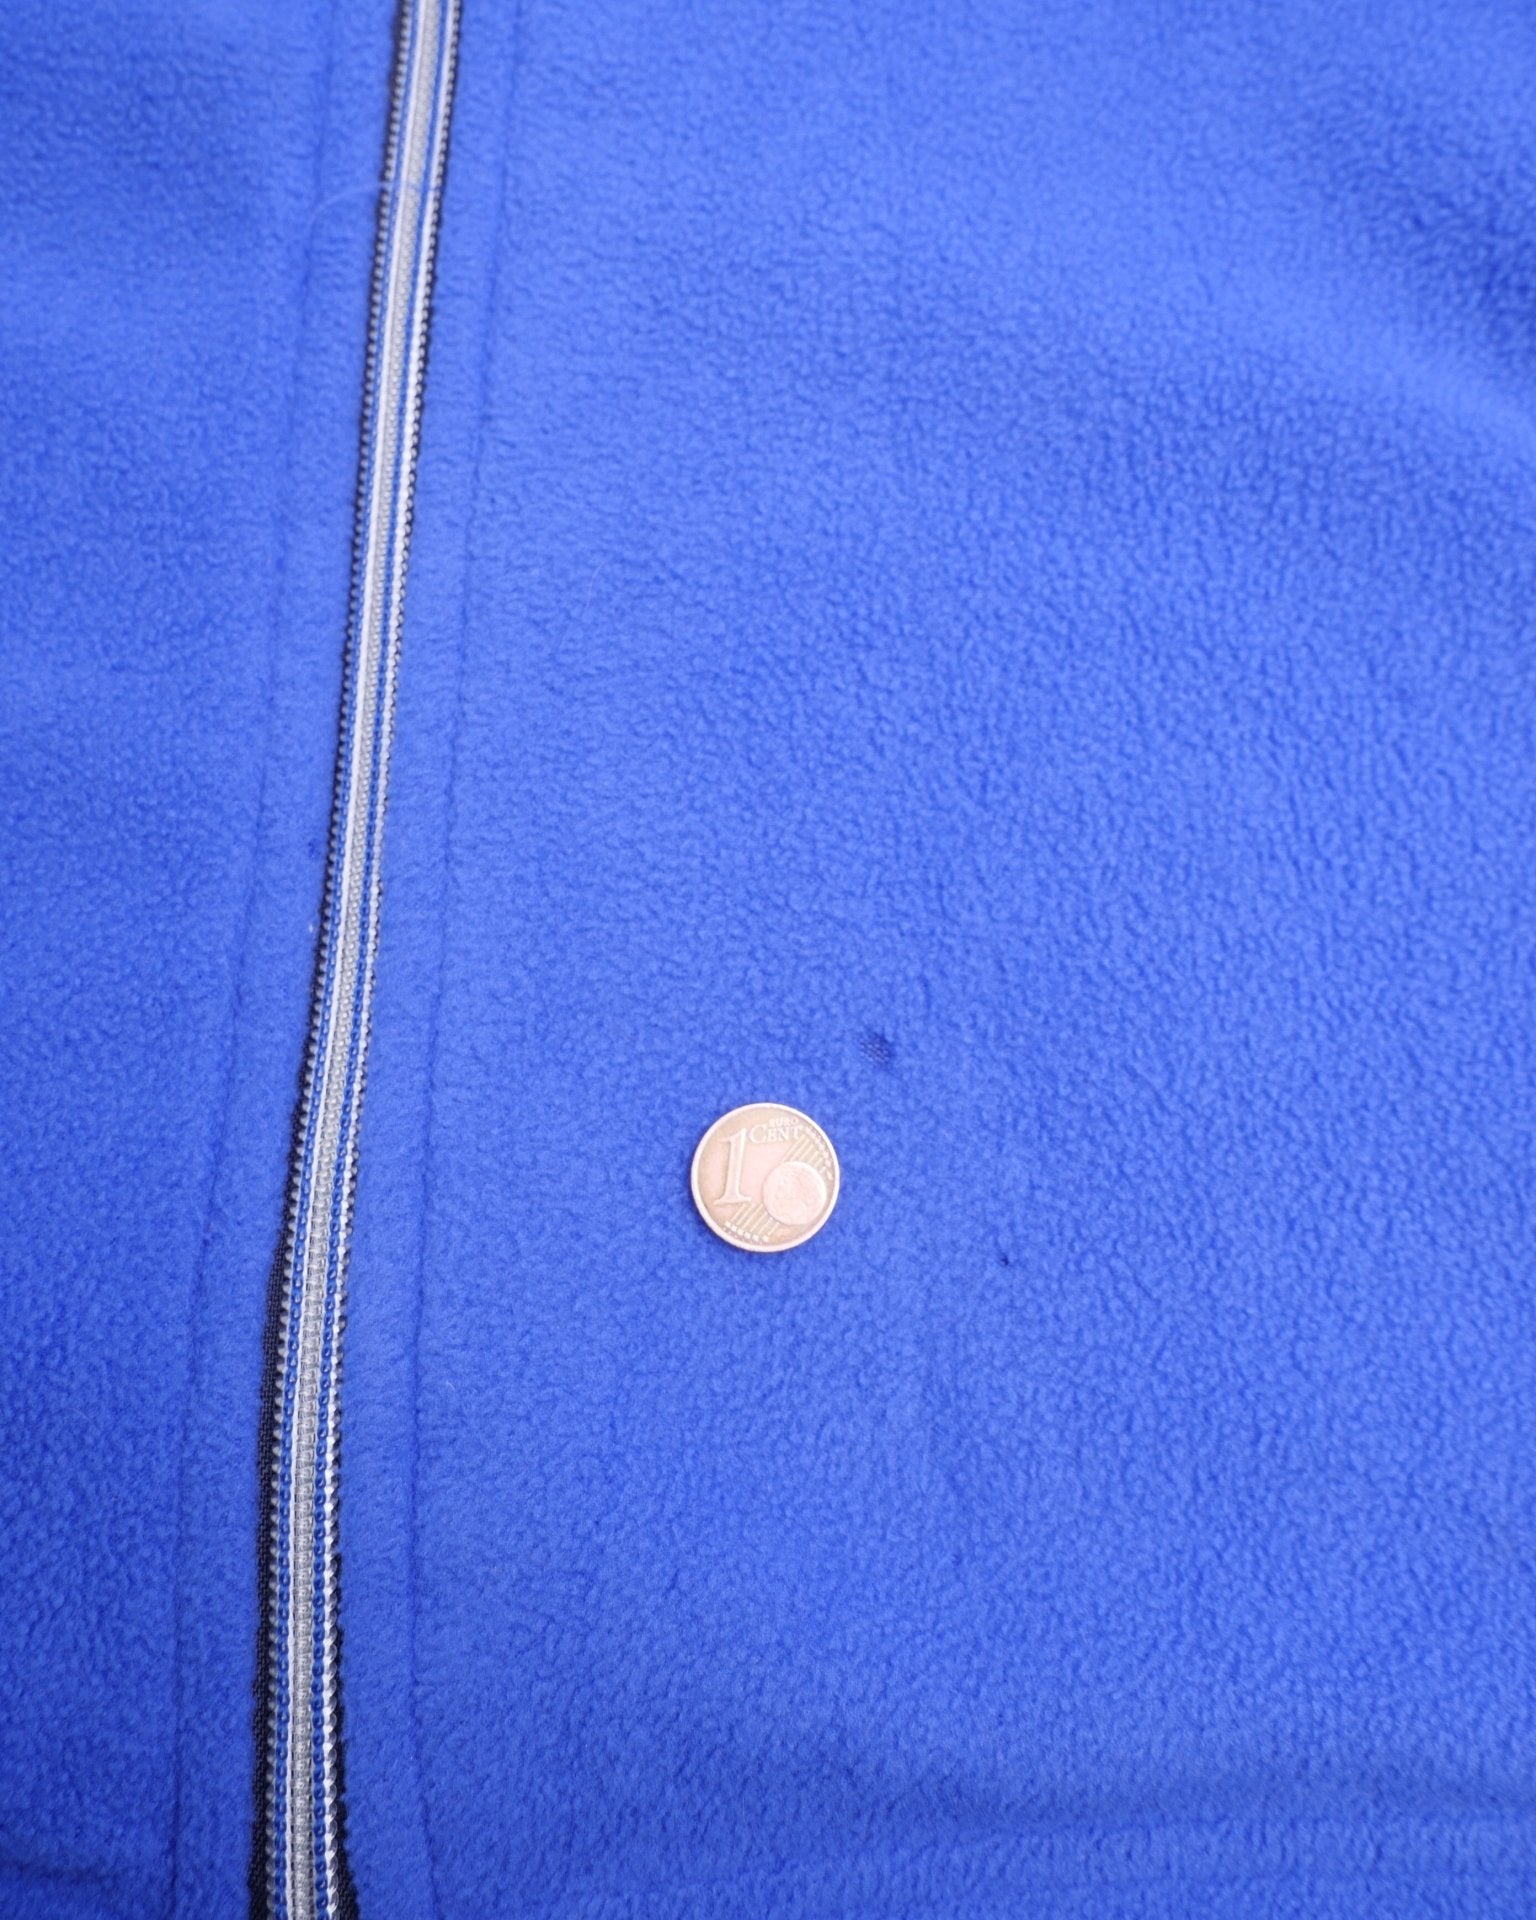 Starter two toned Fleece Zip Jacket - Peeces